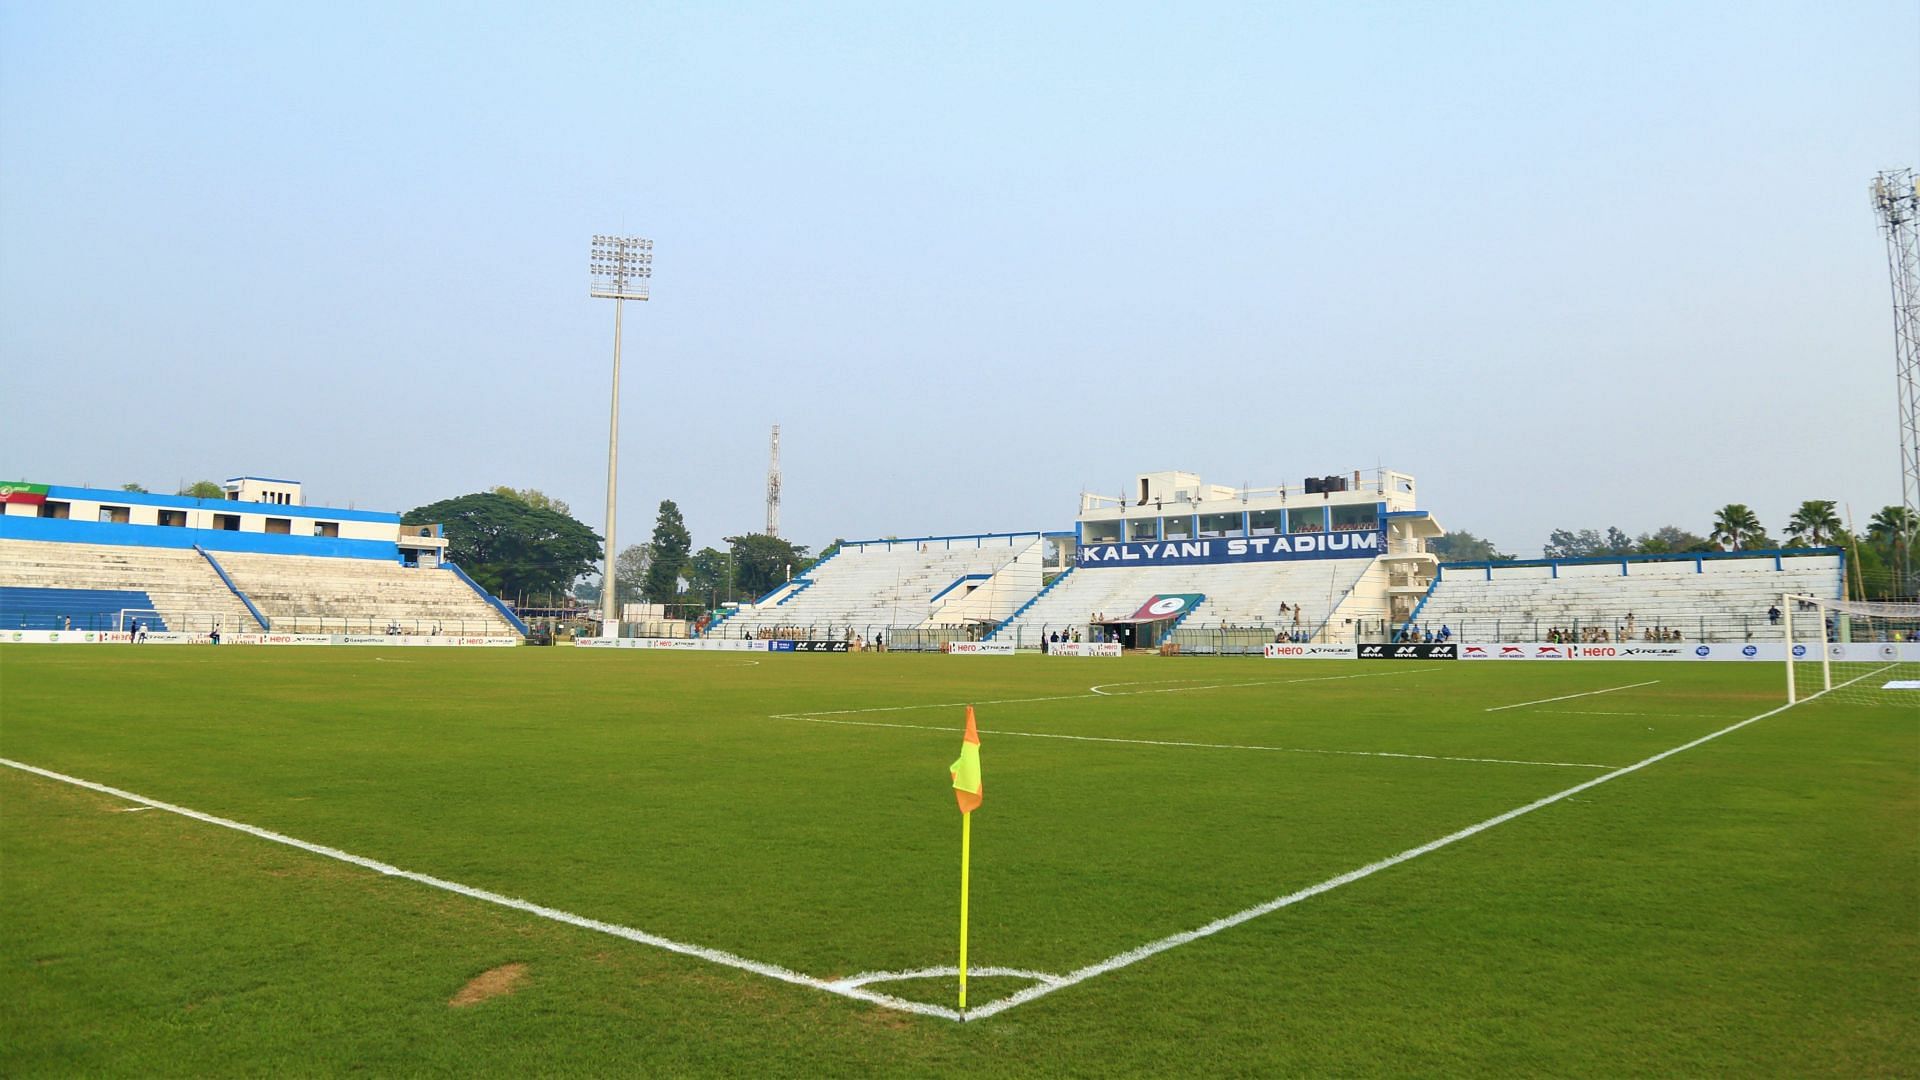 A view of the Kalyani Stadium - Image Courtesy: I-League Twitter